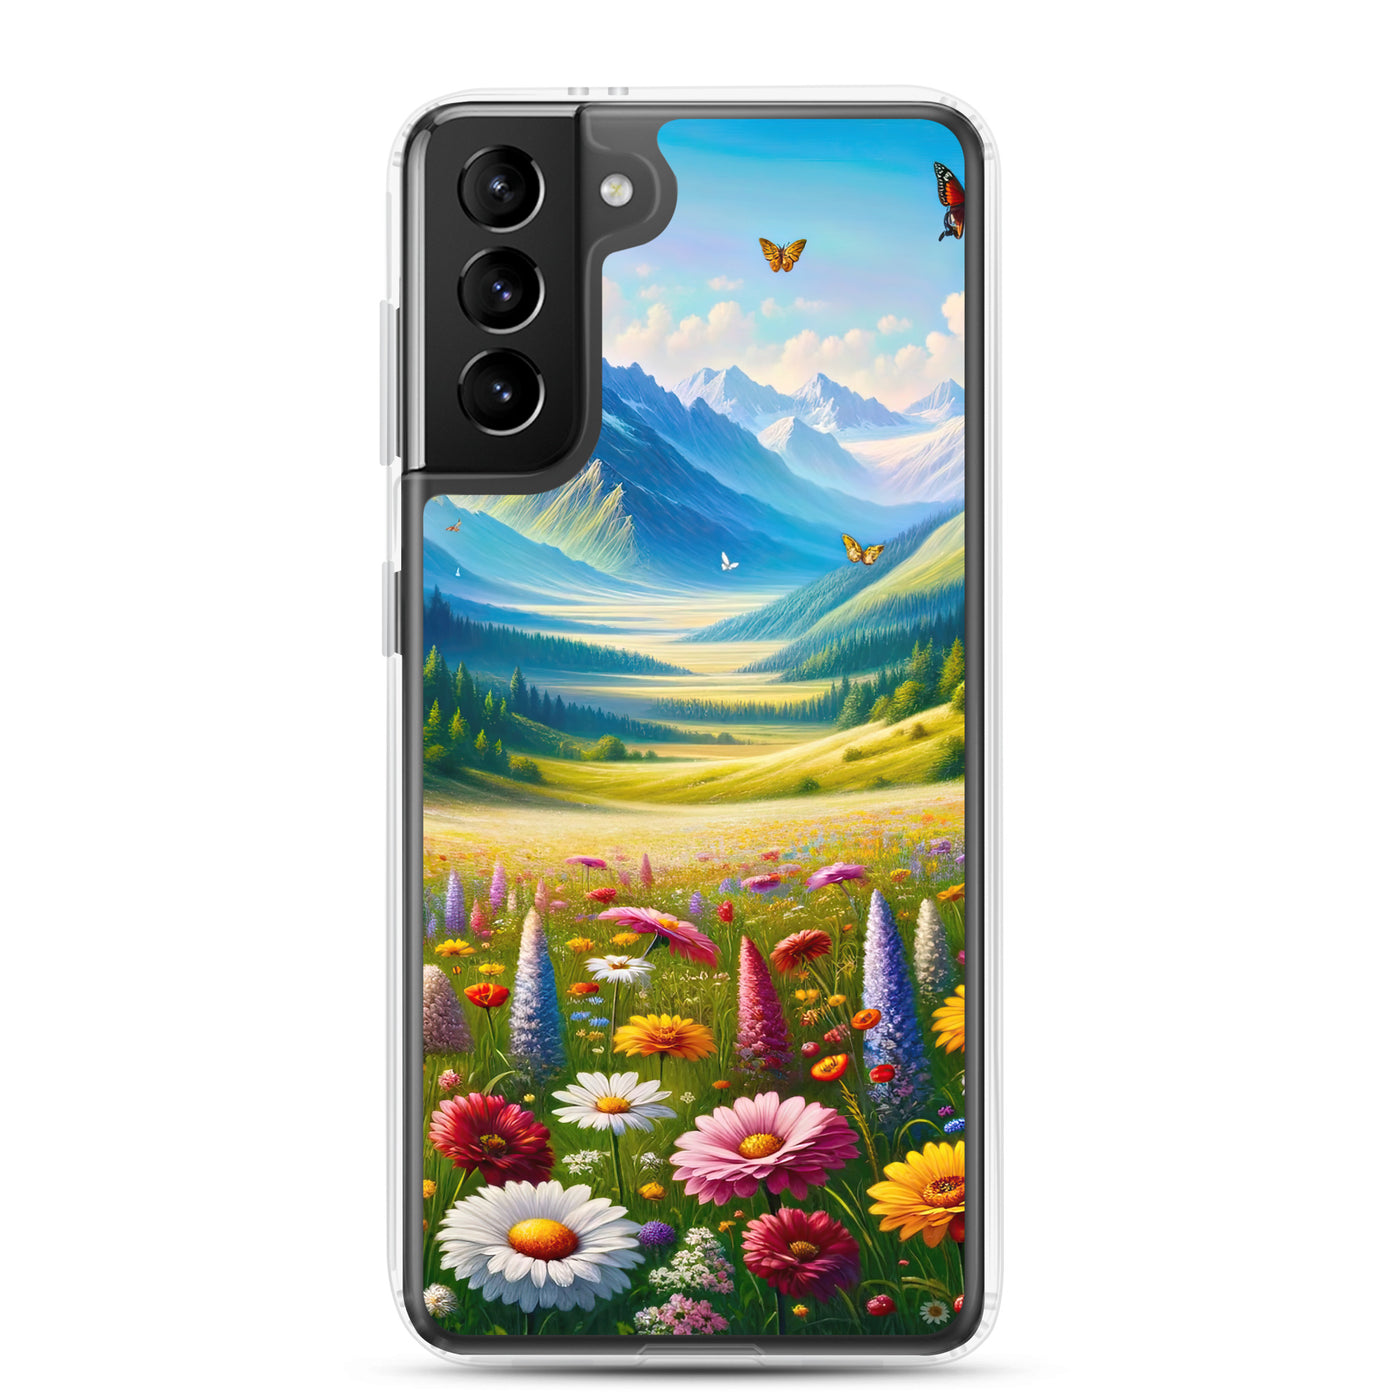 Ölgemälde einer ruhigen Almwiese, Oase mit bunter Wildblumenpracht - Samsung Schutzhülle (durchsichtig) camping xxx yyy zzz Samsung Galaxy S21 Plus